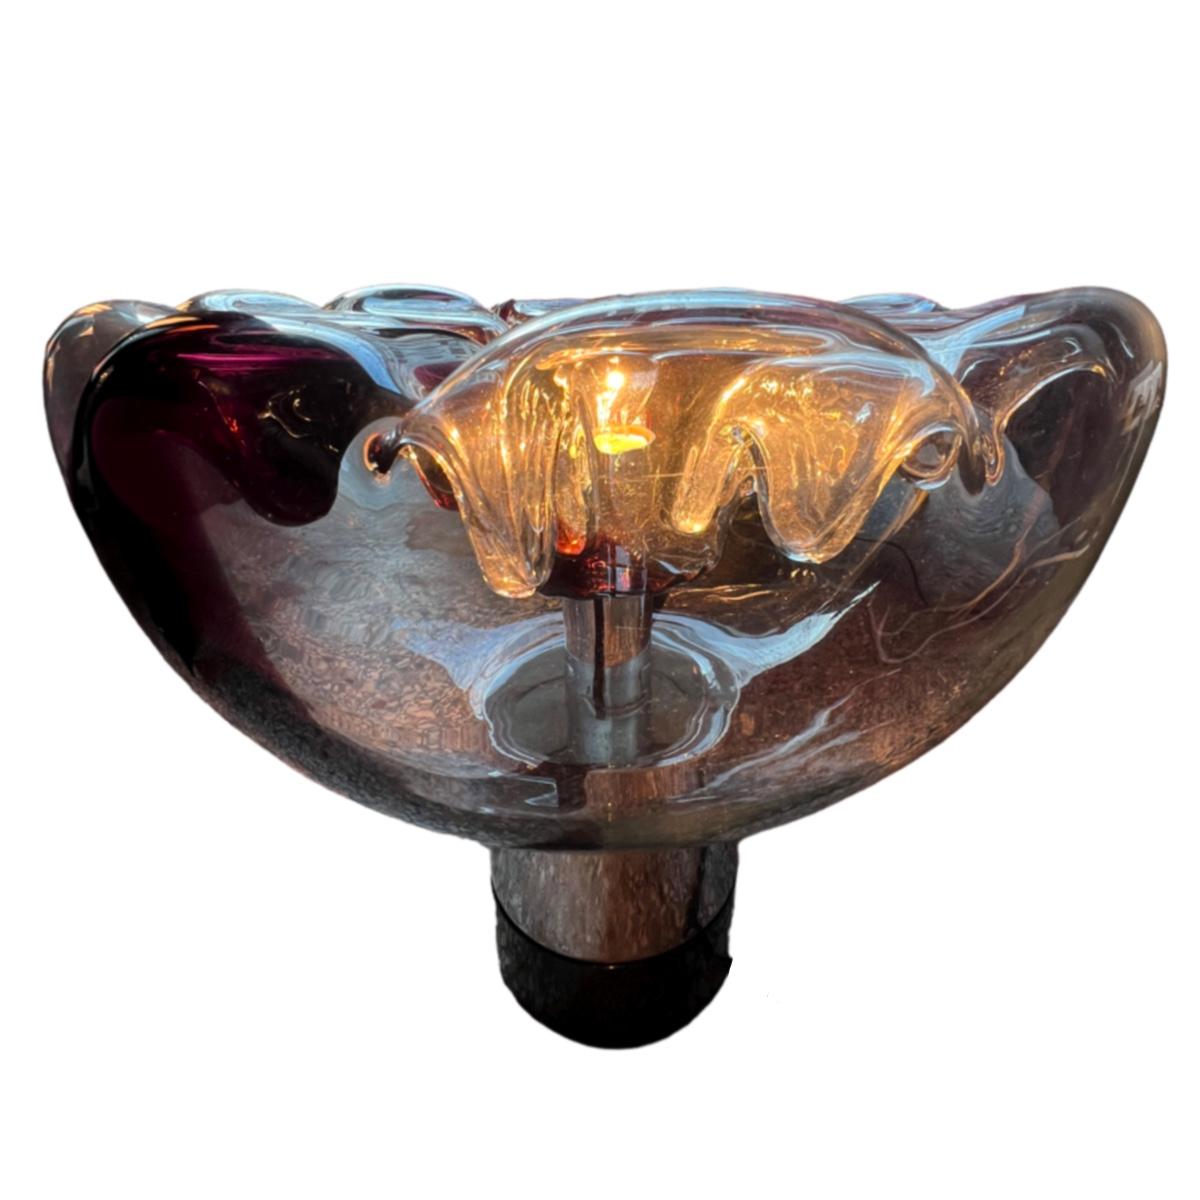 Très grande lampe de table du célèbre designer verrier, Toni Zuccheri, pour la société italienne VeArt.
Le verre soufflé à la bouche est bicolore, transparent et bordeaux foncé.
Depuis le sommet, des cônes de verre sont suspendus vers le bas, ce qui